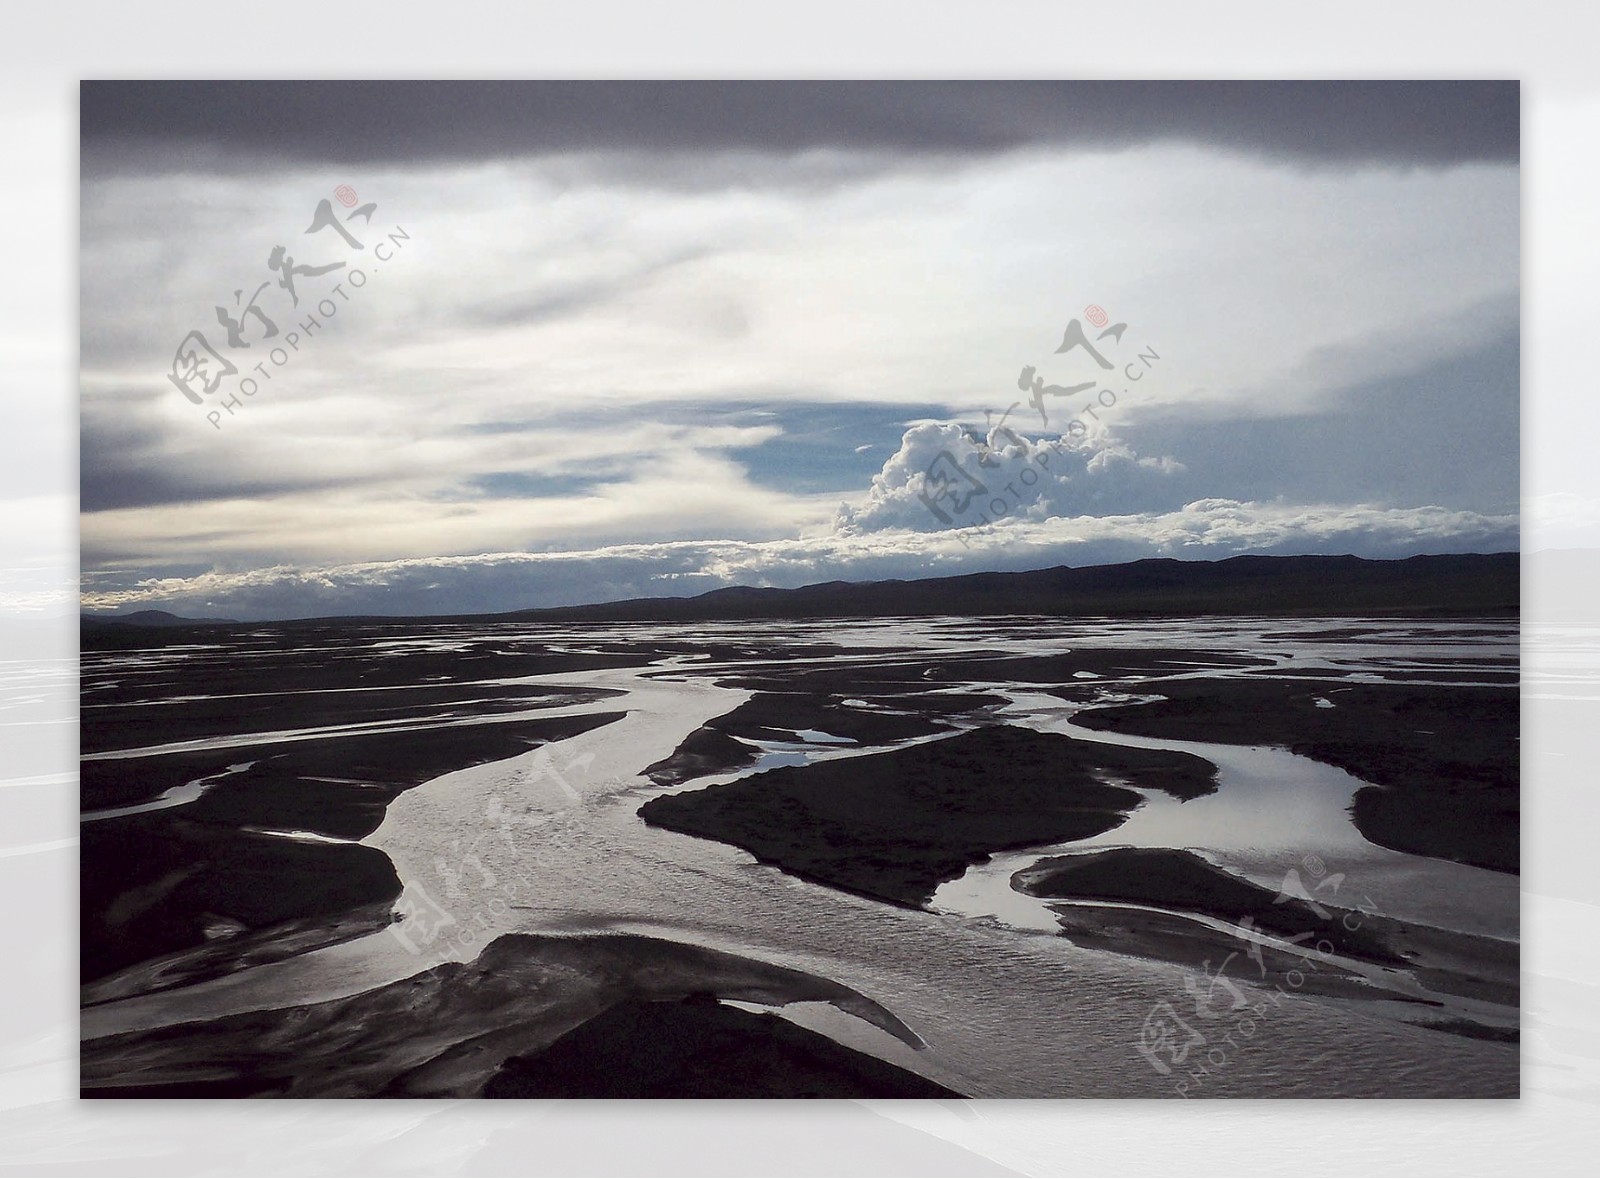 西藏河流图片